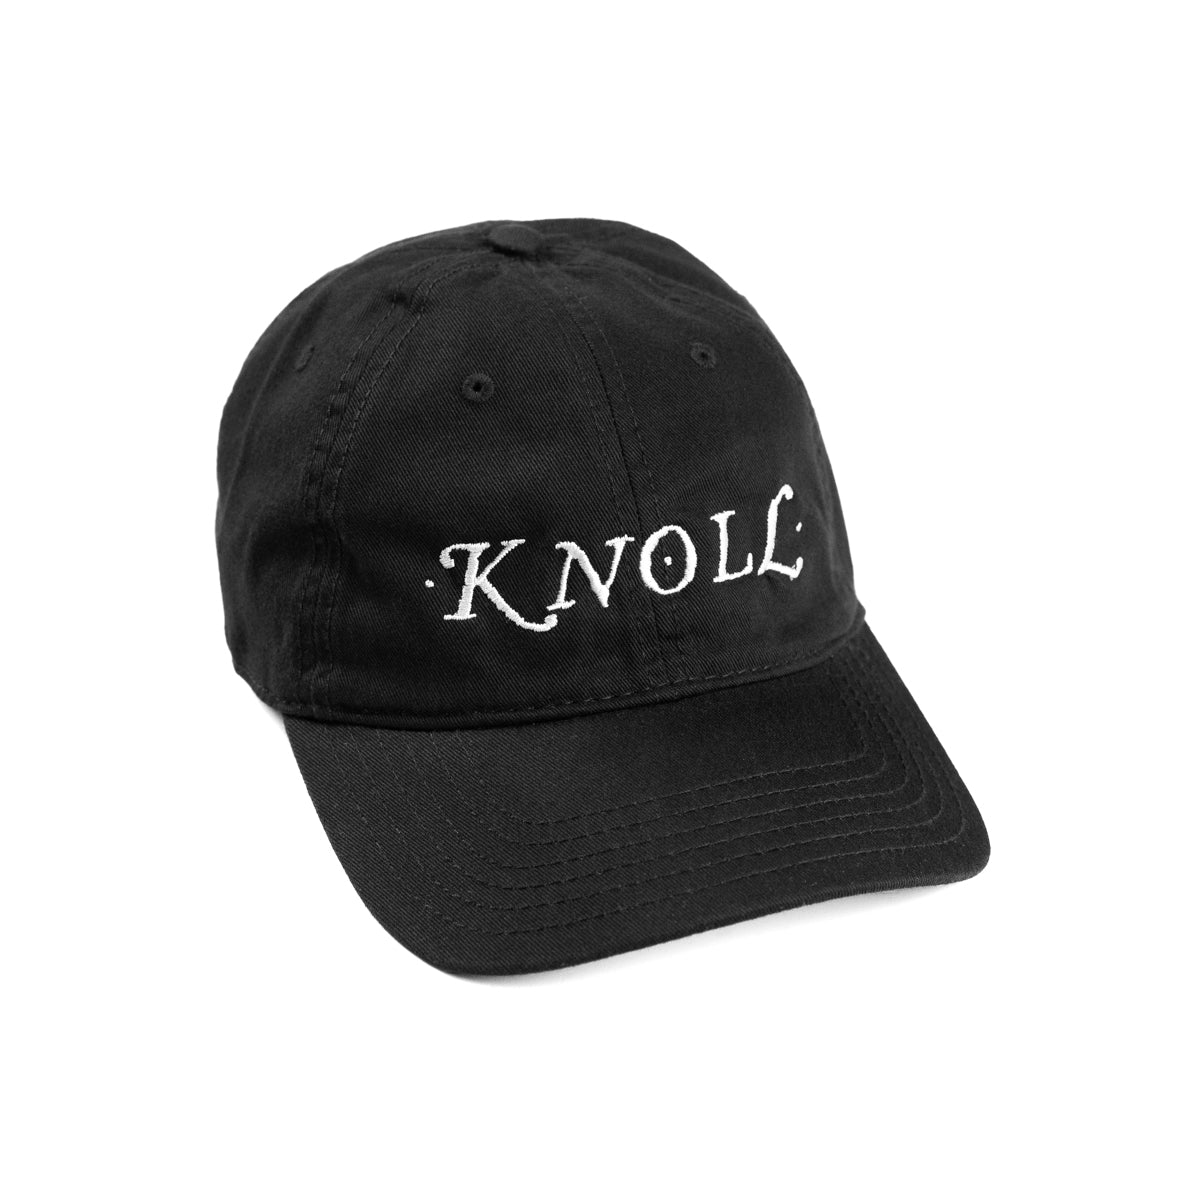 KNOLL "Logo" Cap